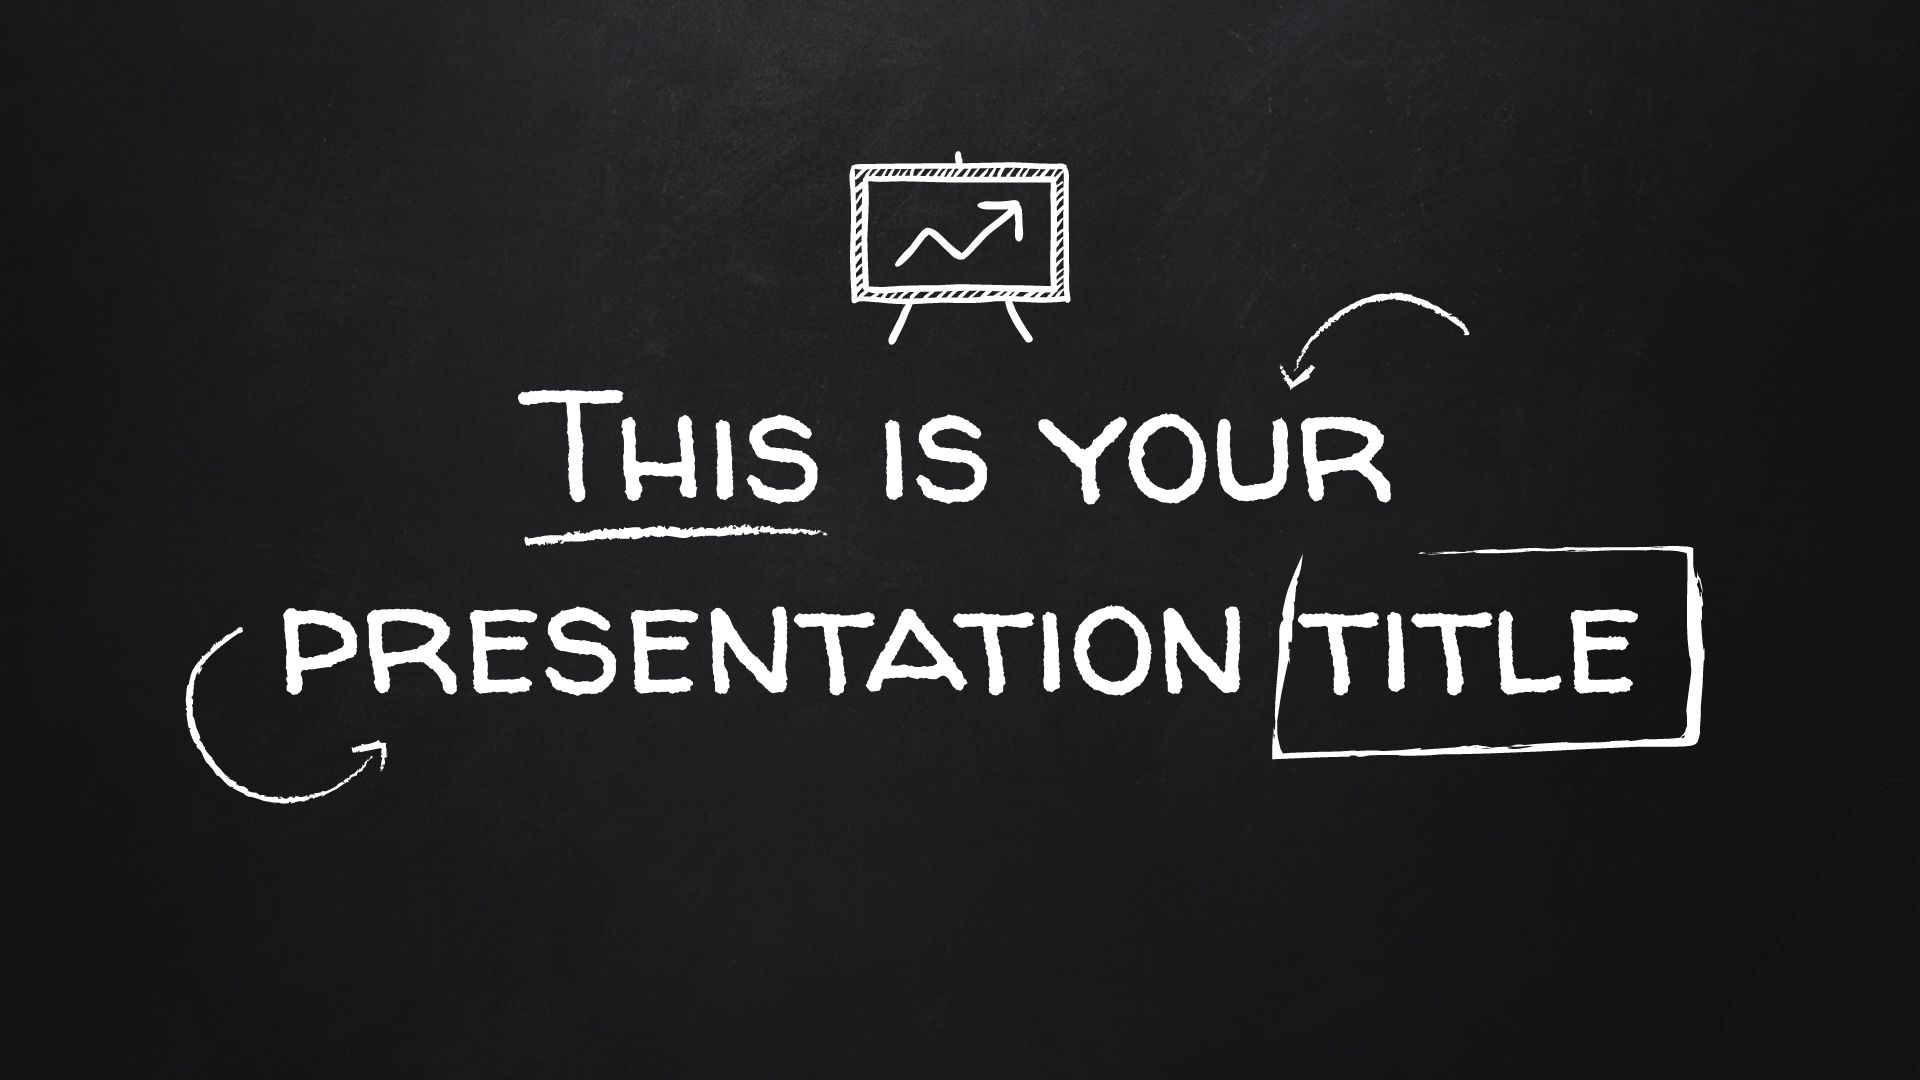 Mẫu slide giáo dục bảng đen miễn phí: Bạn muốn giảng dạy một cách chuyên nghiệp và hiệu quả trên PowerPoint? Những mẫu slide giáo dục bảng đen miễn phí của chúng tôi sẽ giúp bạn tổ chức thông tin, tạo ra slide bài giảng sinh động và truyền cảm hứng. Tải về và đừng bỏ lỡ cơ hội trải nghiệm thiết kế giáo dục tuyệt vời này!